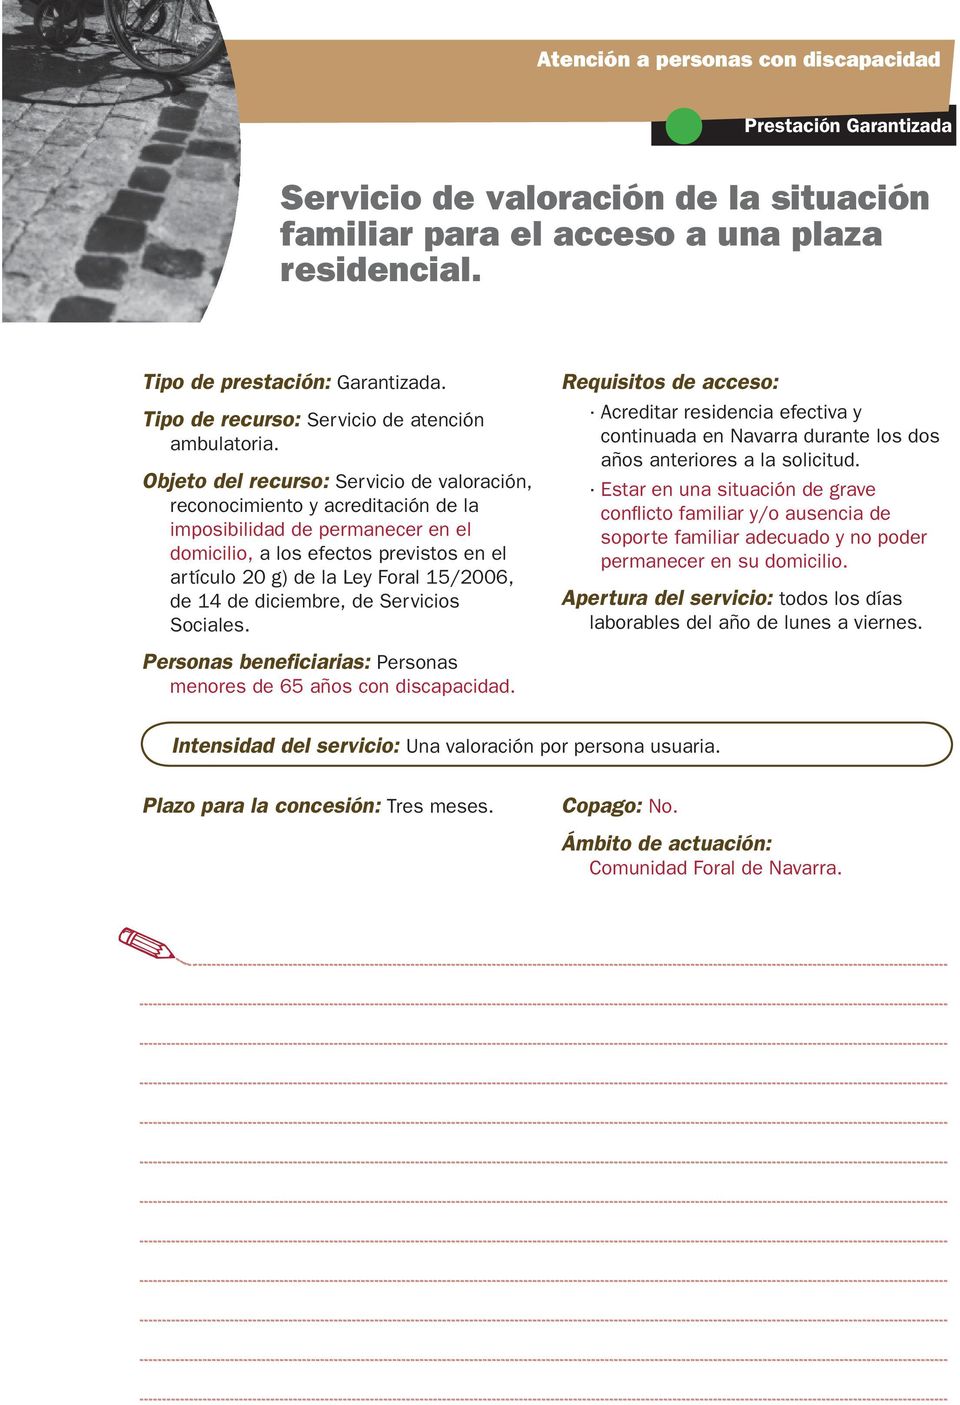 14 de diciembre, de Servicios Sociales. continuada en Navarra durante los dos años anteriores a la solicitud.